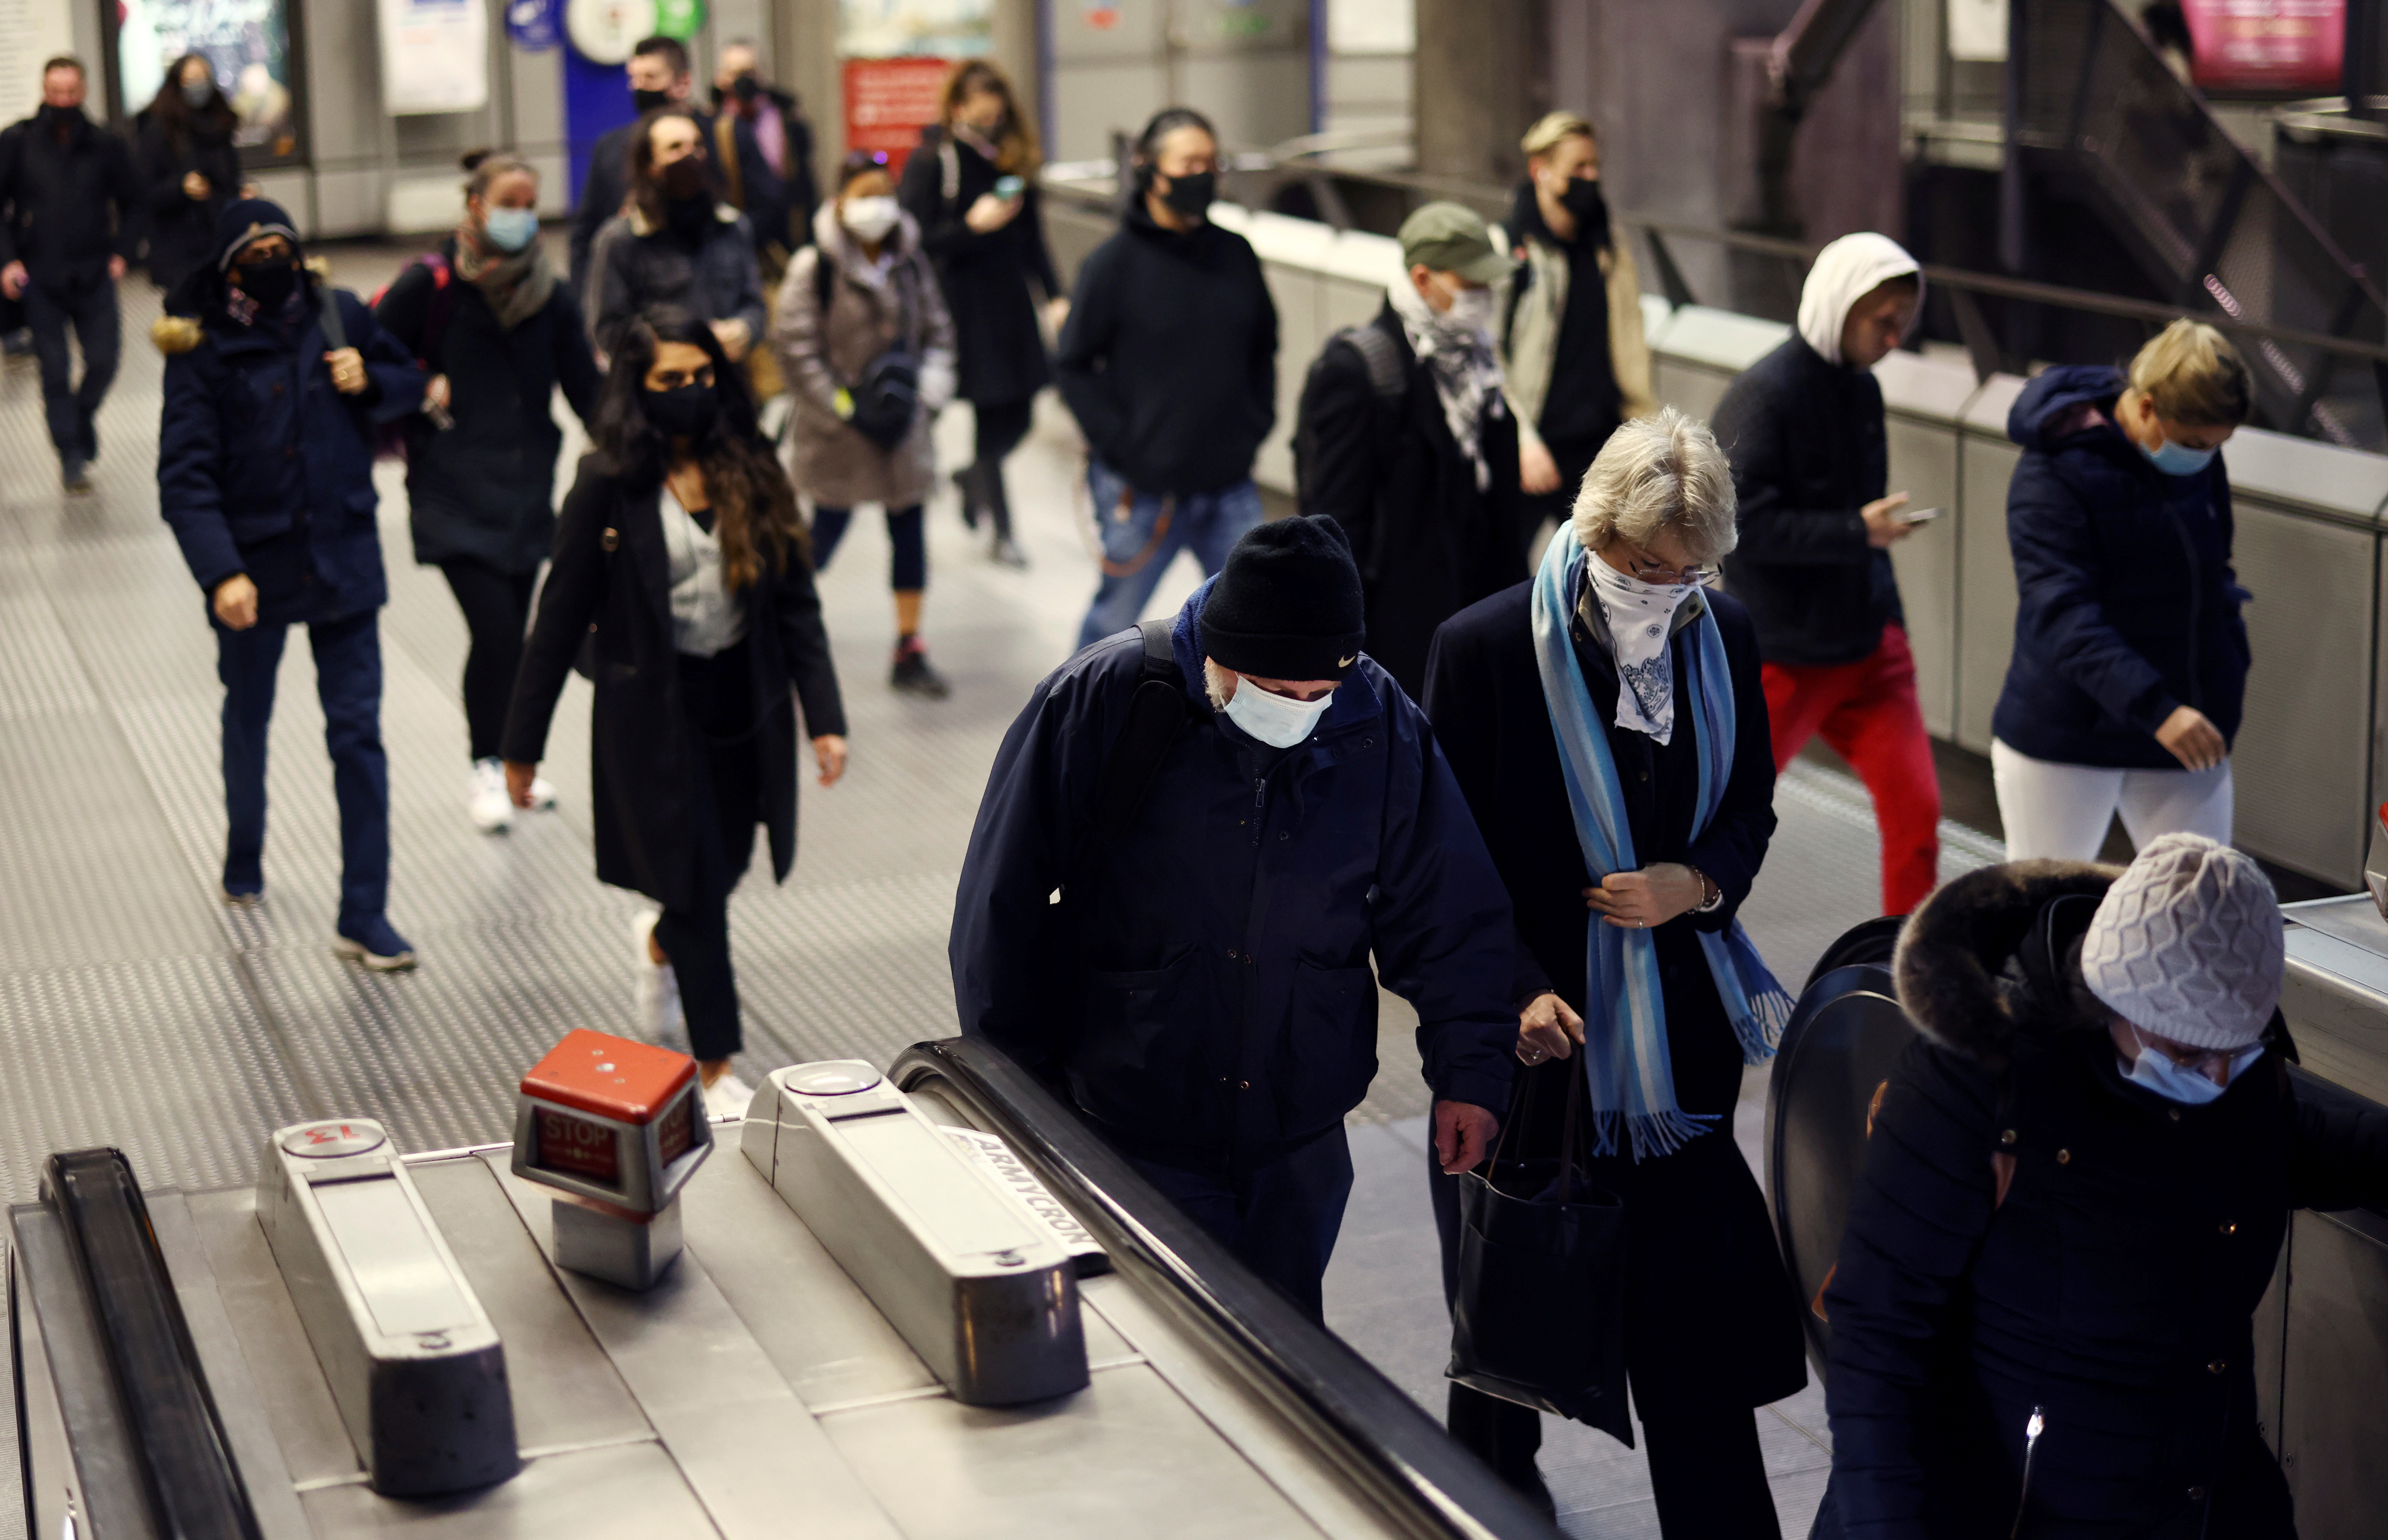 Людзі праходзяць праз станцыю метро Westminster у ранішнюю гадзіну пік на фоне ўспышкі каранавіруснай хваробы (COVID-19) у Лондане, Вялікабрытанія, 1 снежня 2021 г. REUTERS/Henry Nicholls